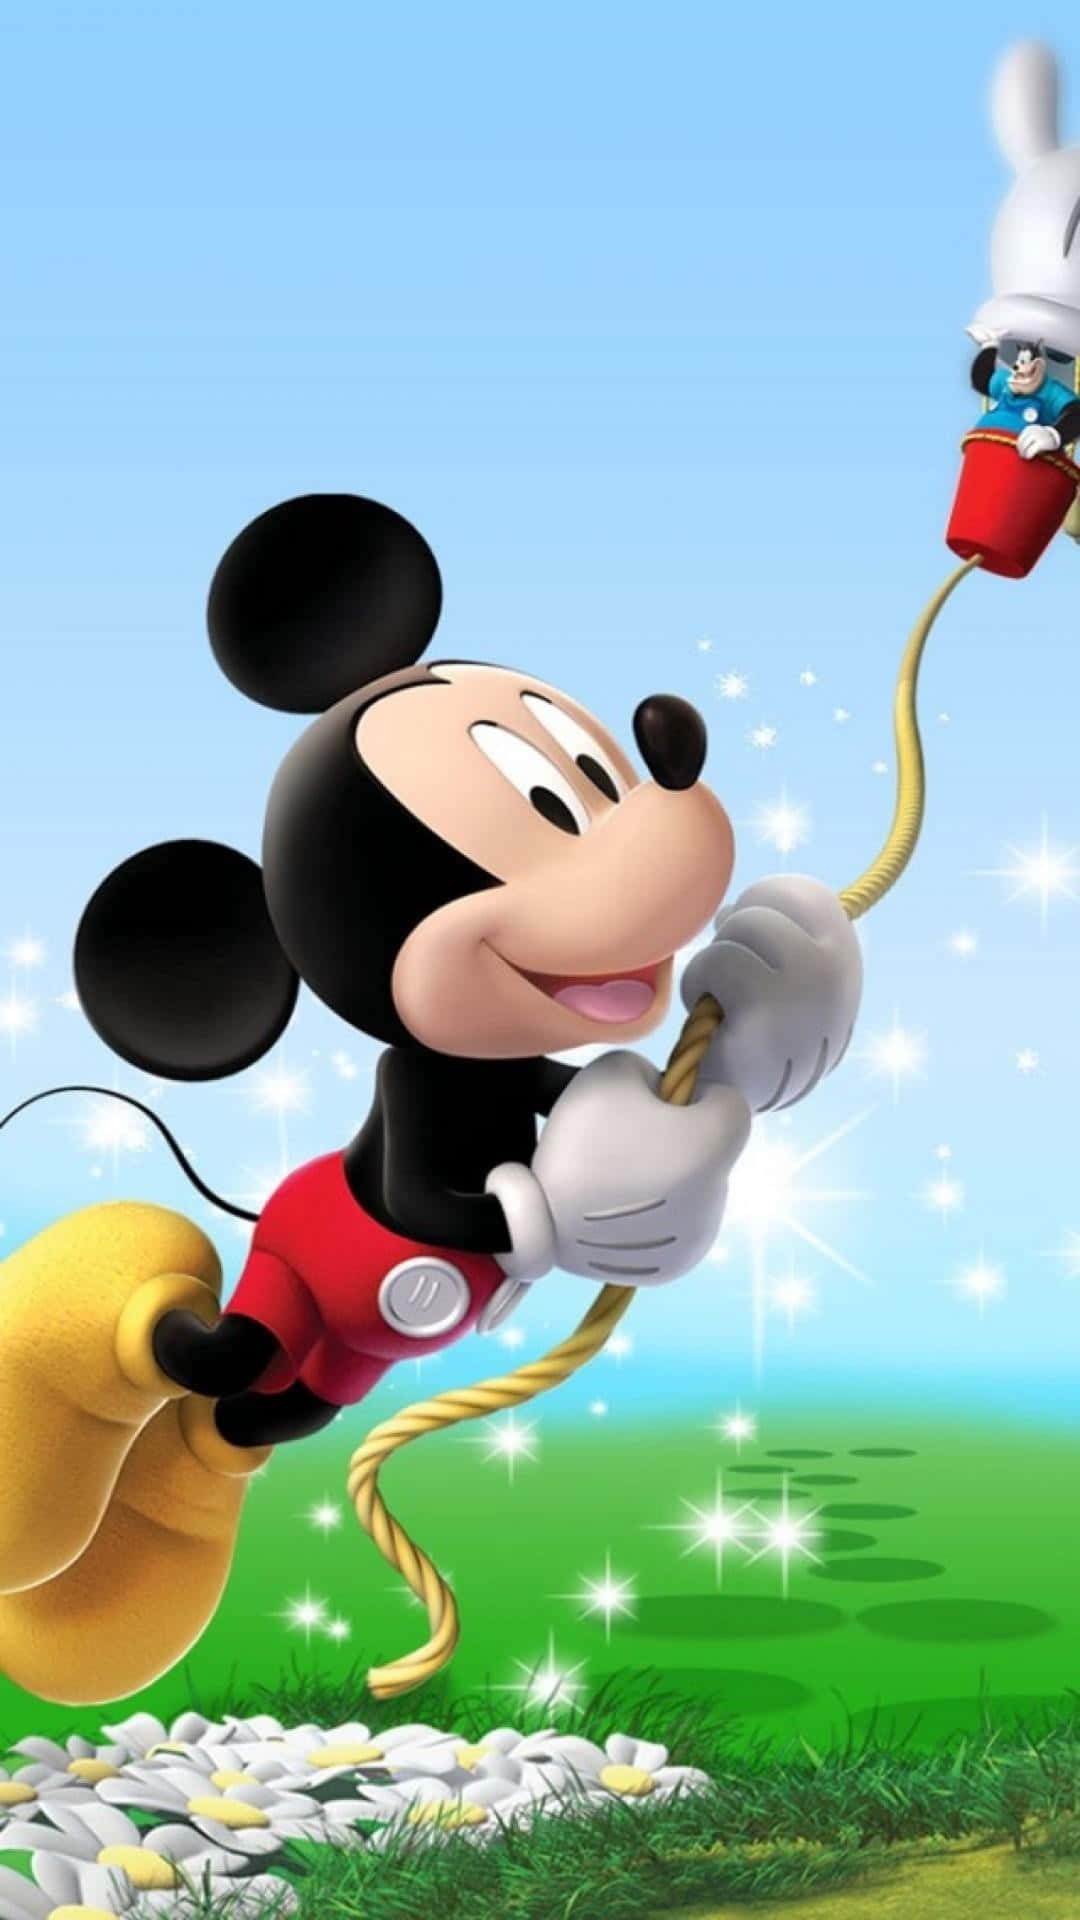 Fondode Pantalla Para Iphone 7 De Disney Con El Guante De Mickey Mouse Y Globos. Fondo de pantalla